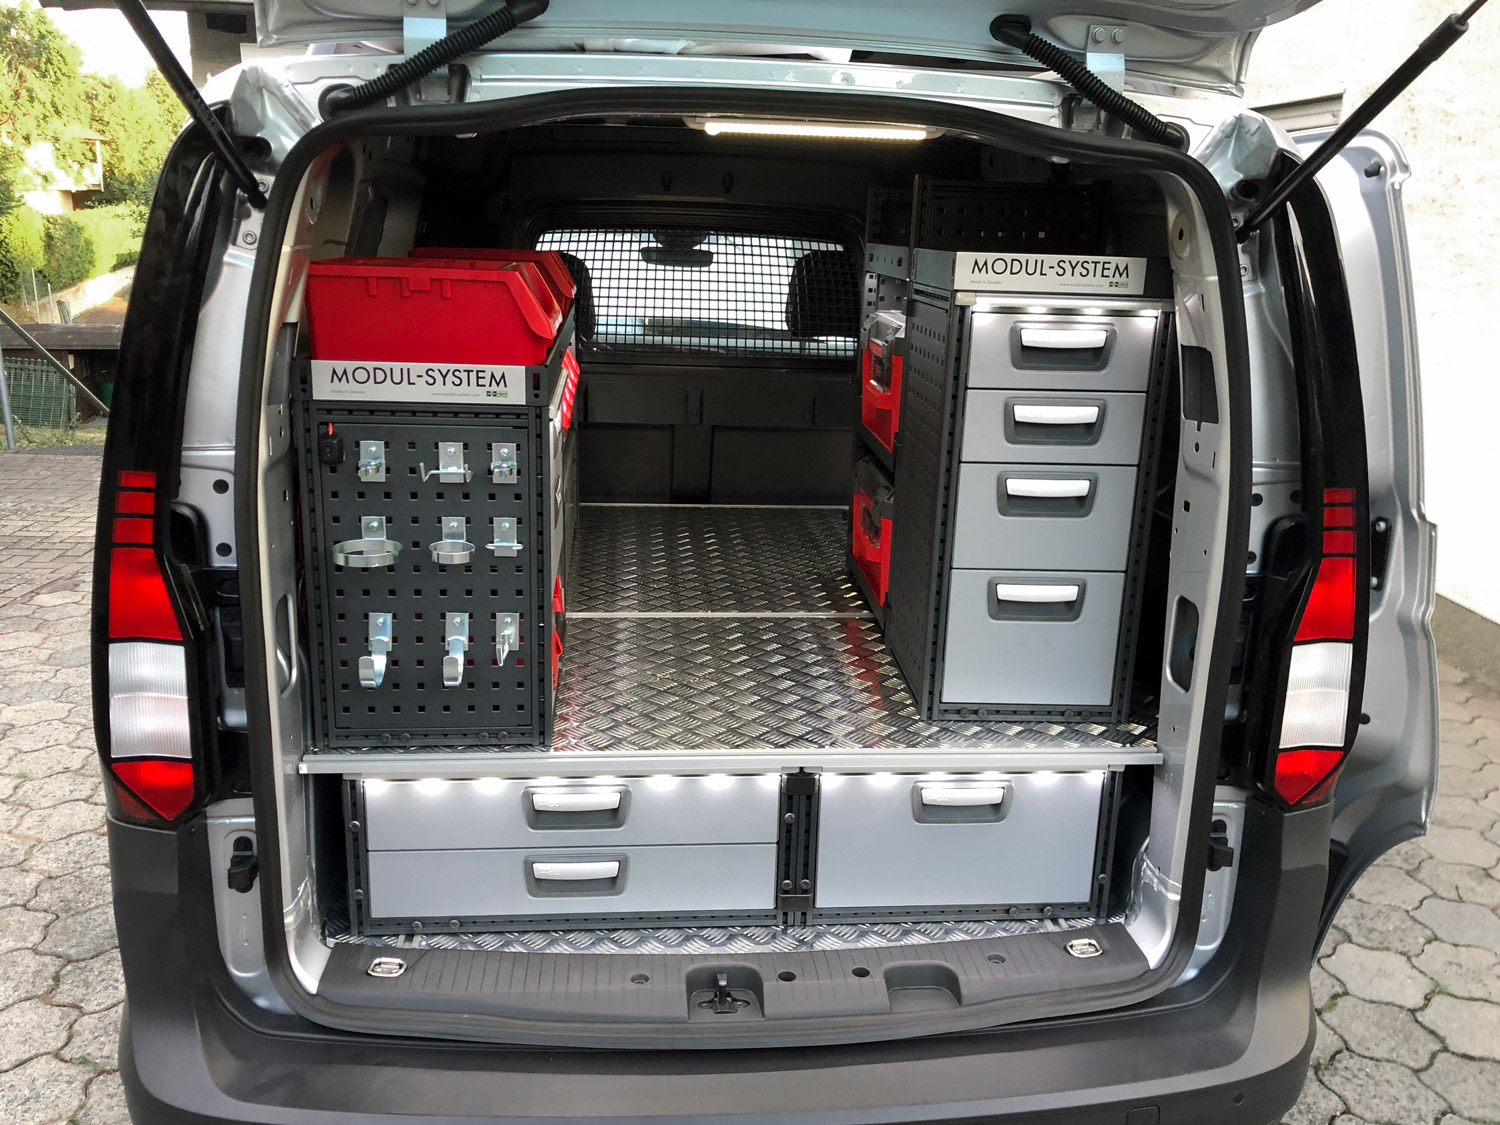 Modul-Systems rekommendationer avseende säker installation av inredning och utrustning i Lätta Lastbilar